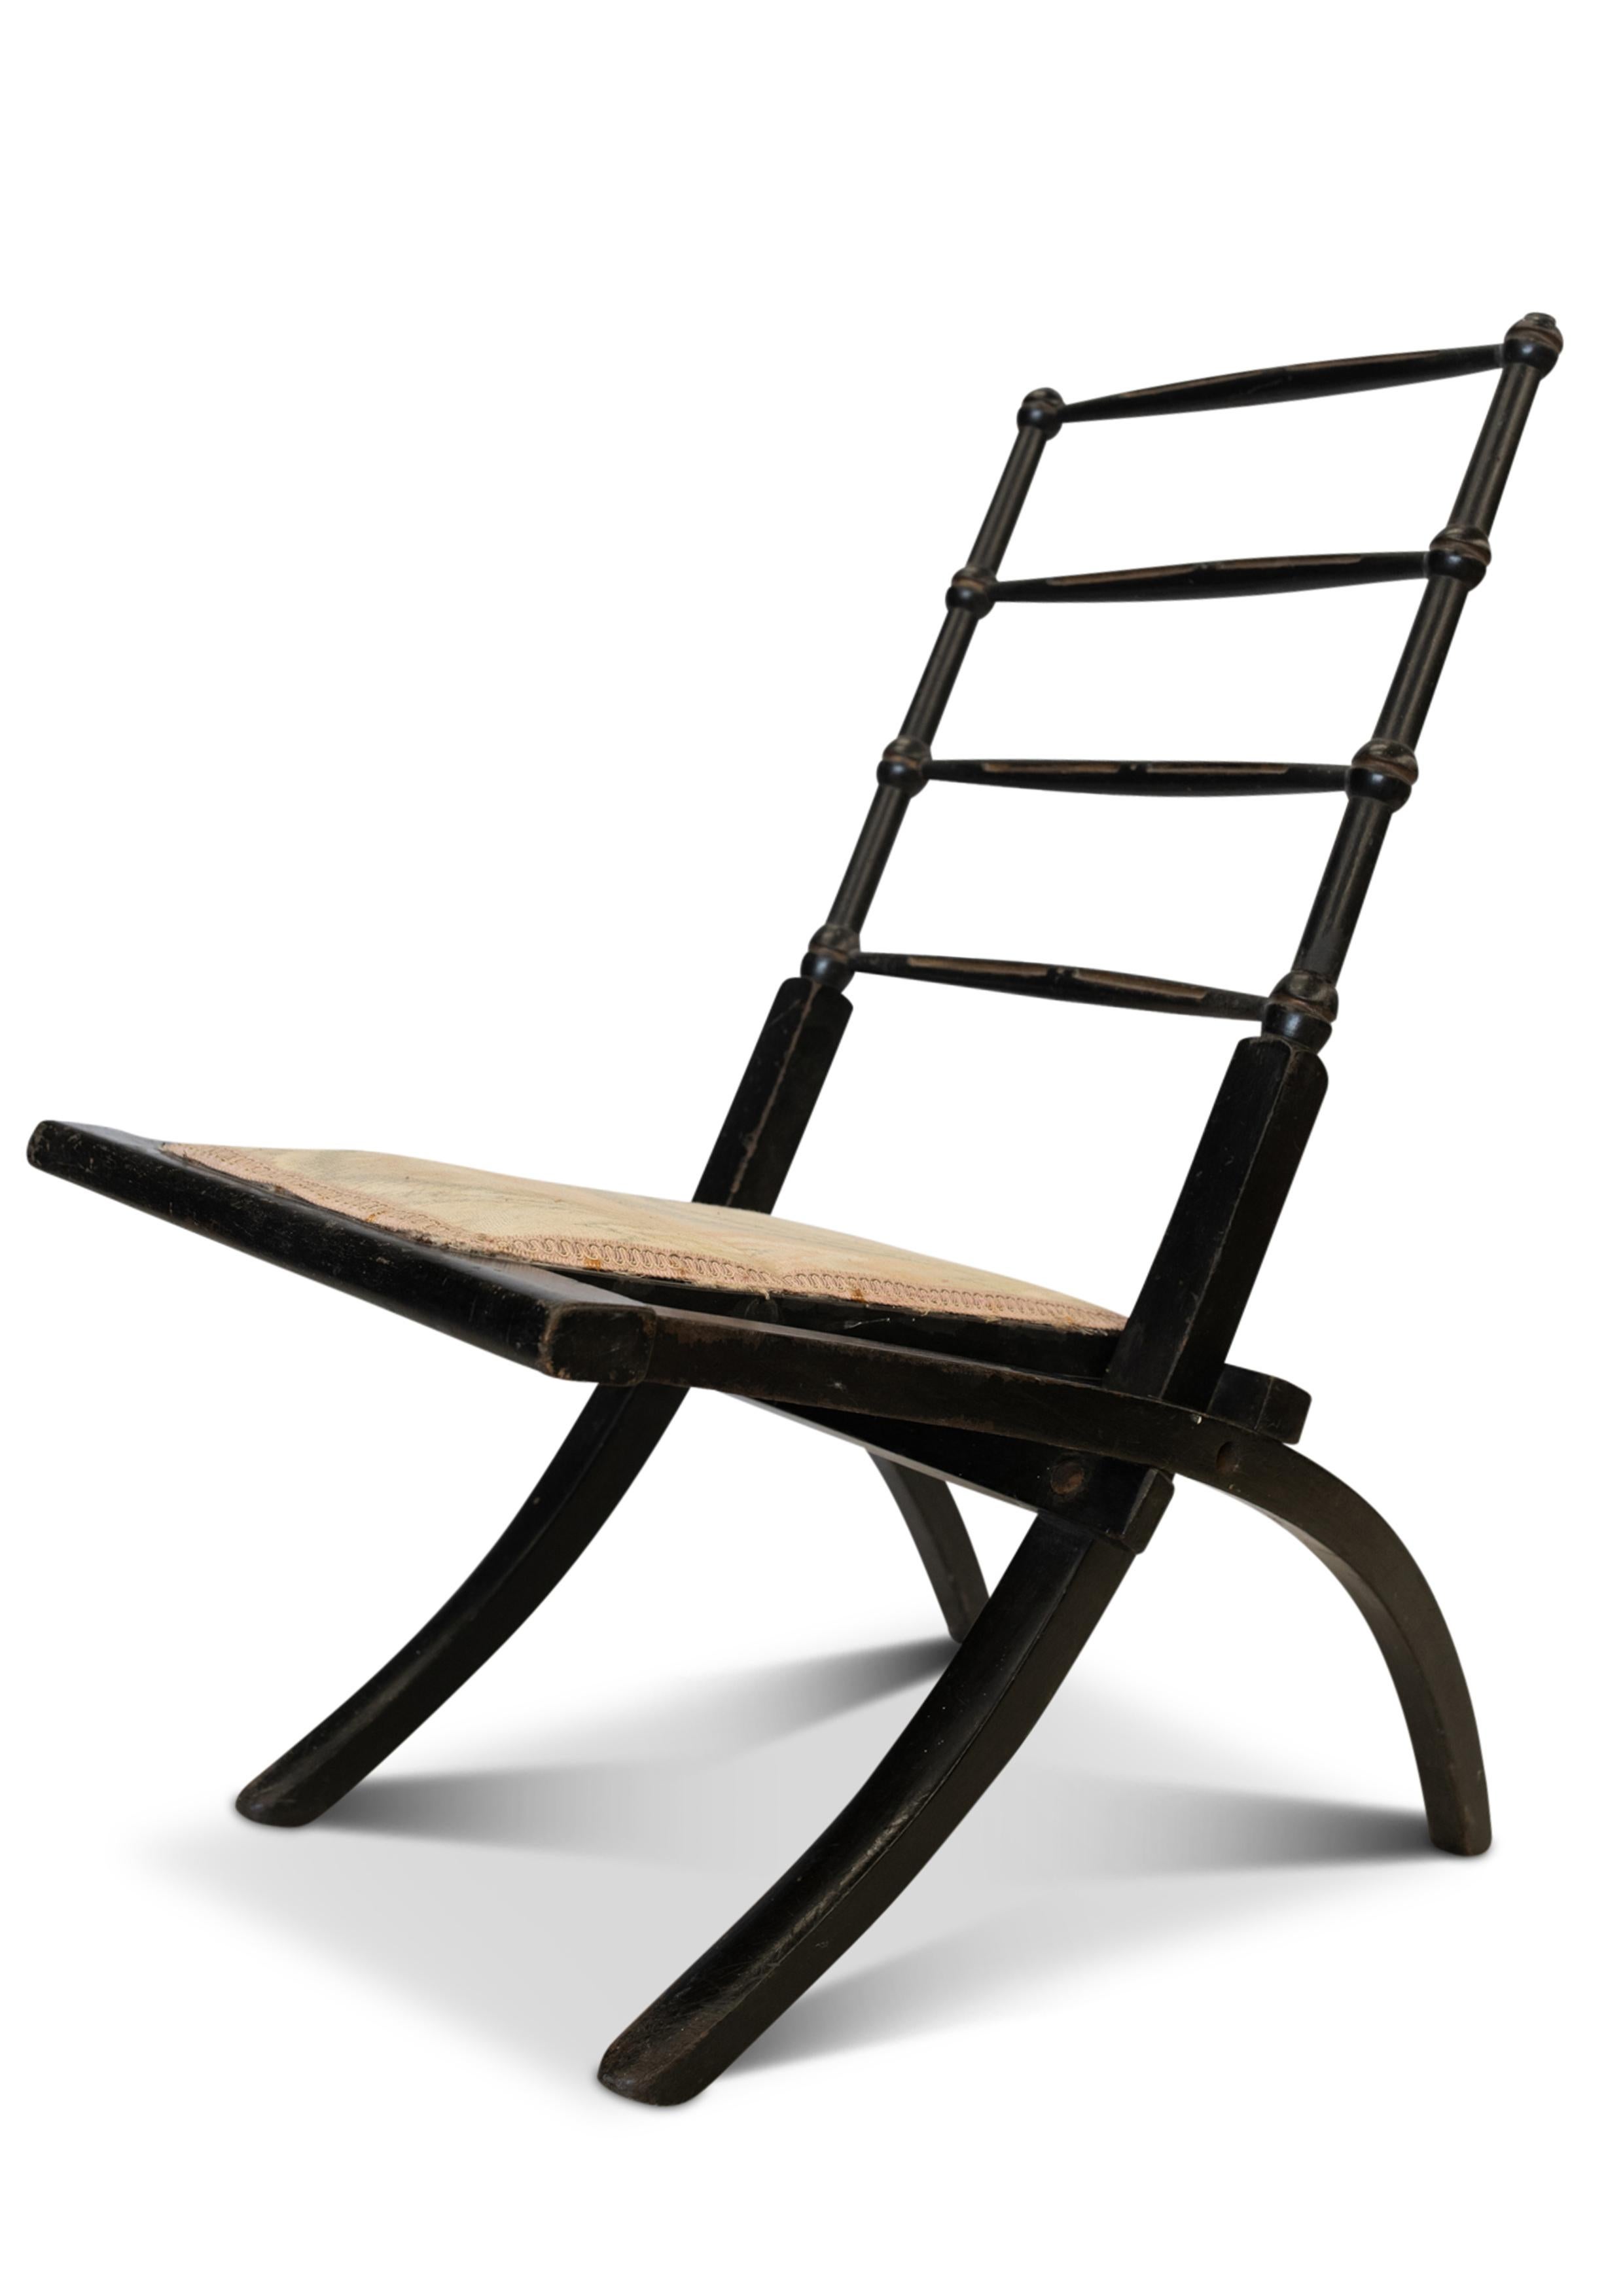 Ein kleiner dekorativer Klappstuhl aus Nussbaumholz mit Sitzfläche aus Rohr, in der Art von E.W. Aesthetic Movement Godwin. Ca. 1870er Jahre.

Zusätzliche Abmessungen: Tiefe der Sitzfläche 31cm 